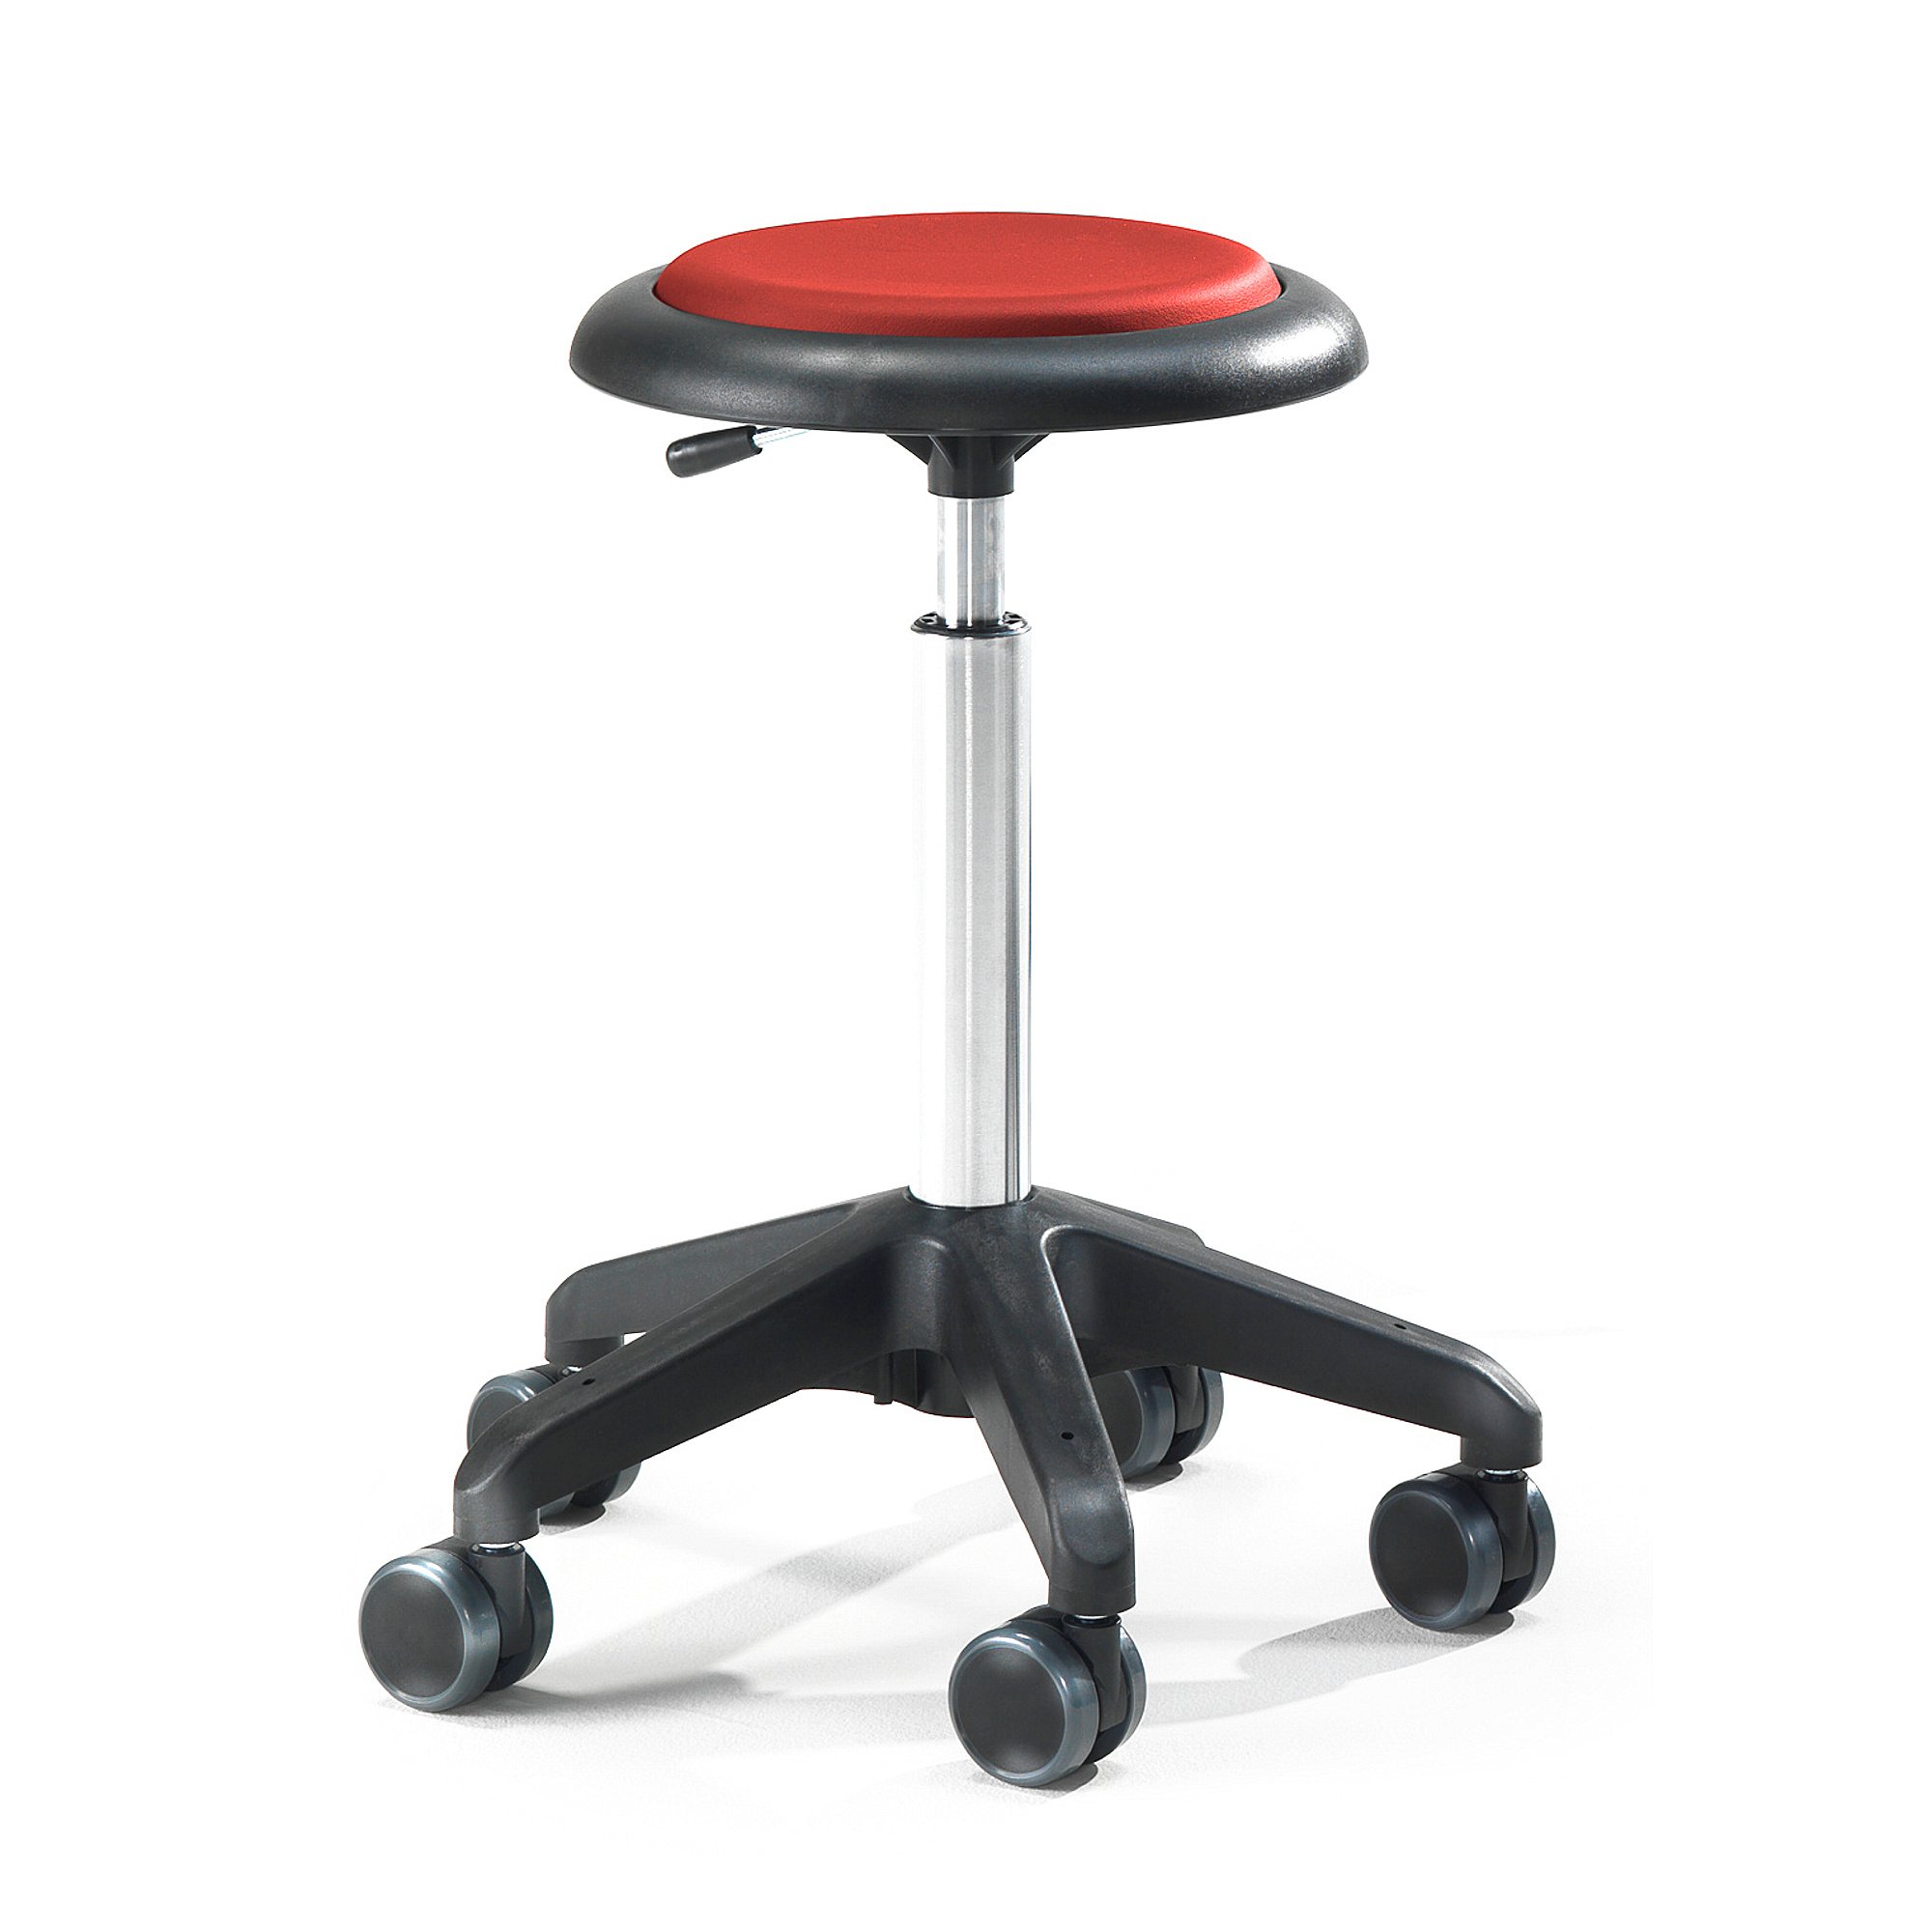 Pracovná dielenská stolička DIEGO, výška 540-730 mm, umelá koža, červená